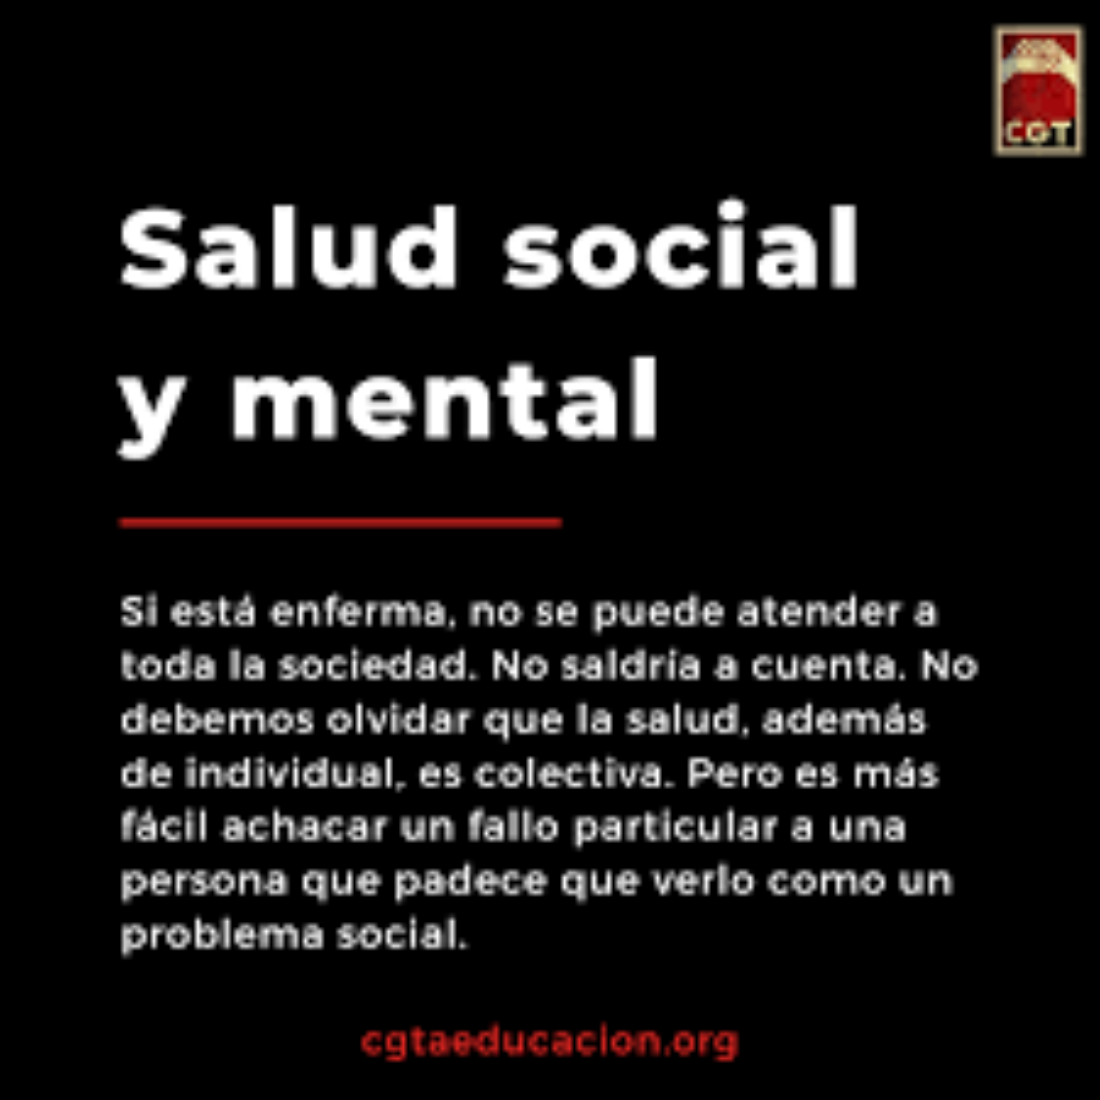 Salud social y mental